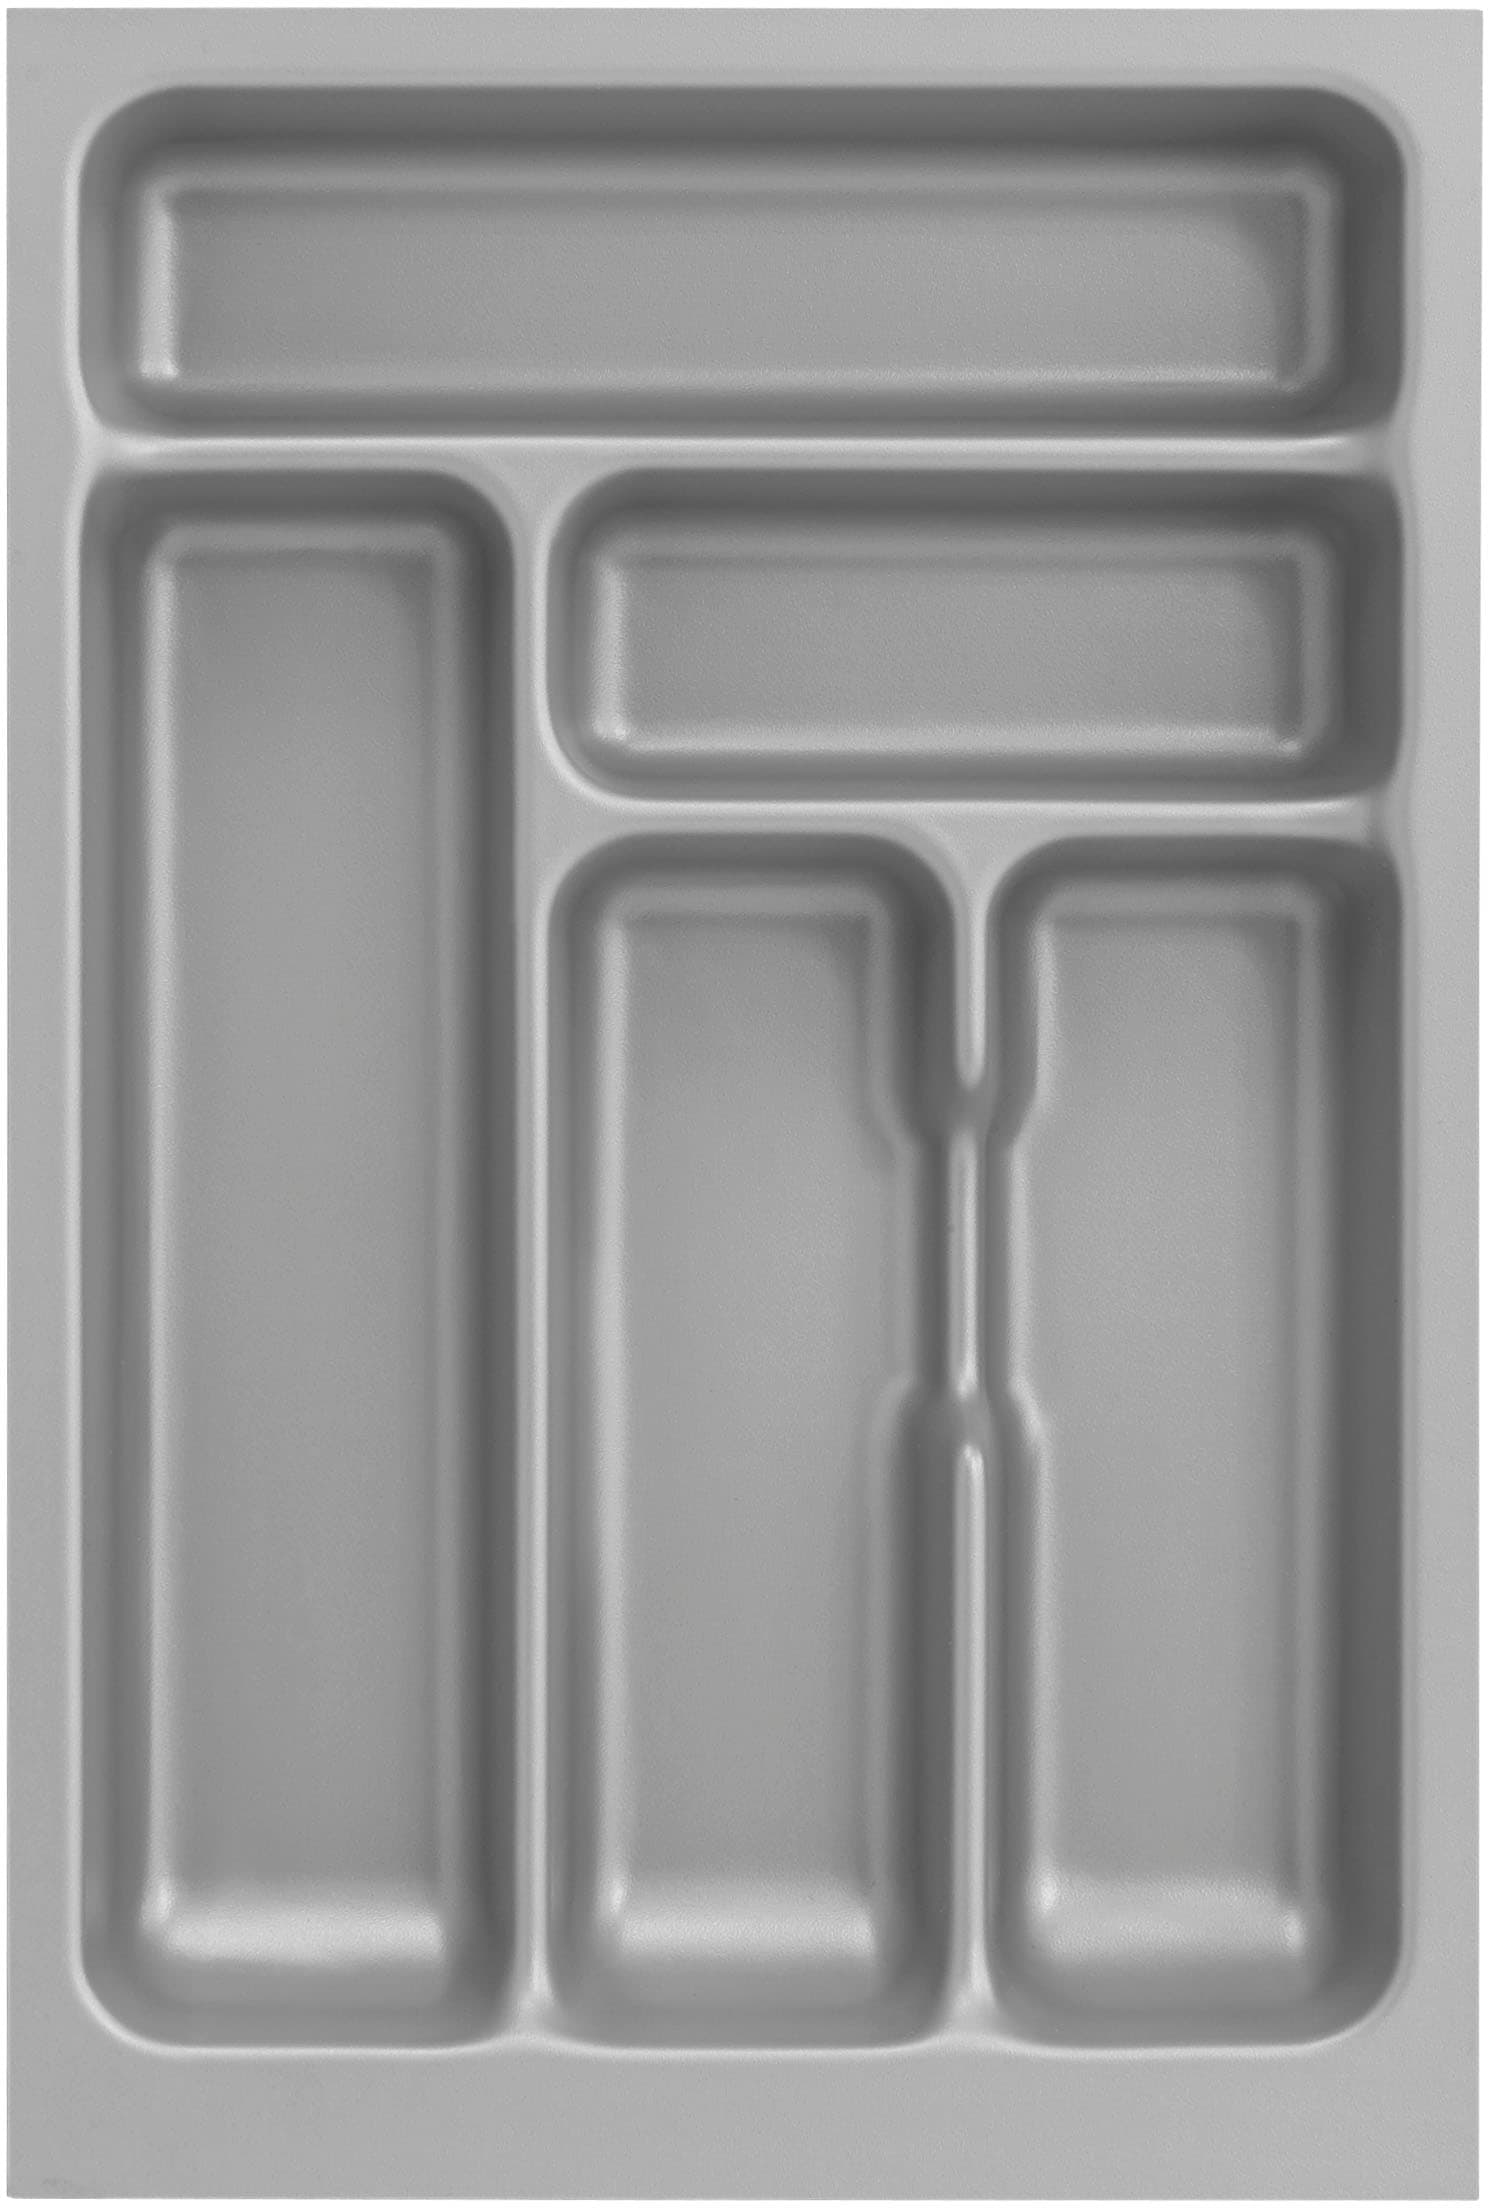 OPTIFIT Küche »Safeli«, Breite 210 cm, wahlweise mit oder ohne Hanseatic-E-Geräte